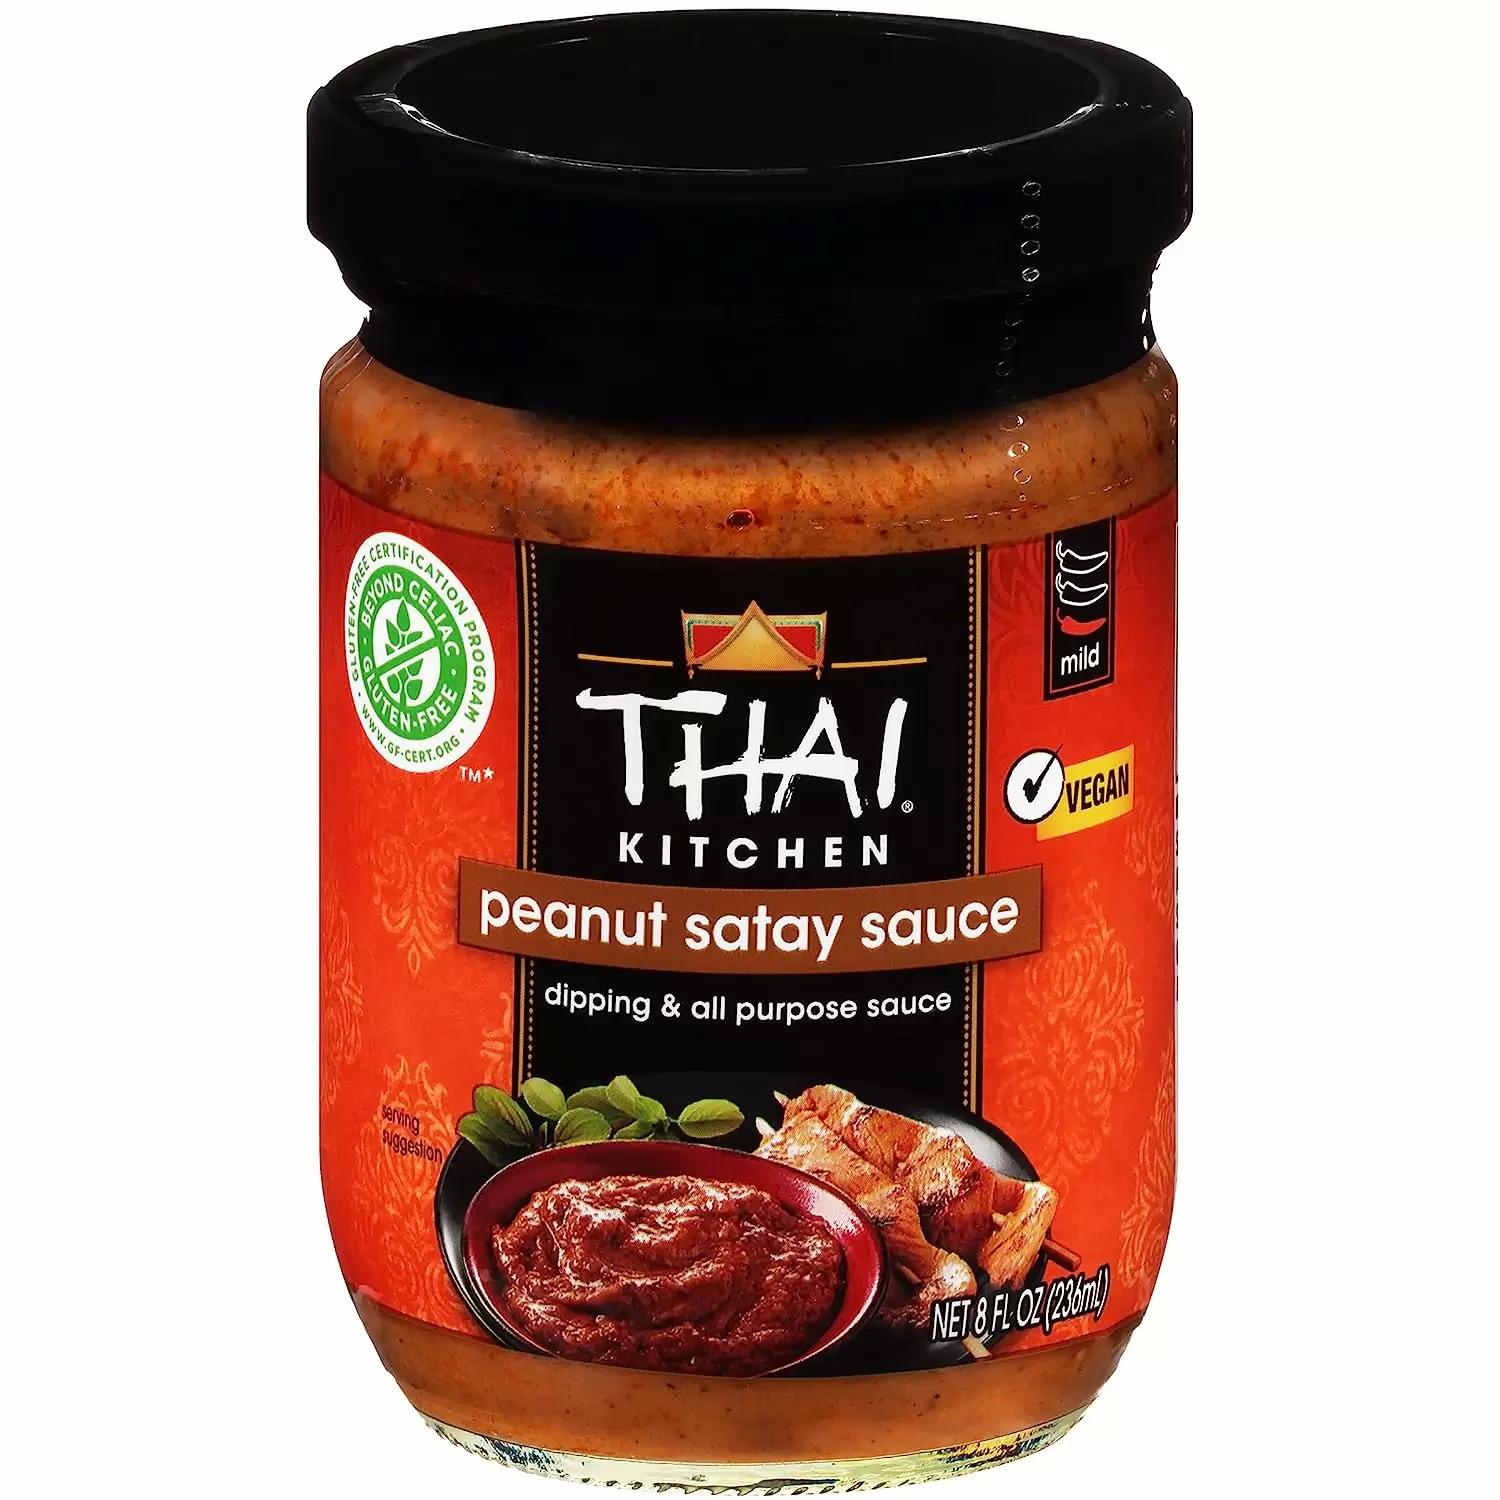 Thai Kitchen Gluten Free Peanut Satay Sauce for $3.09